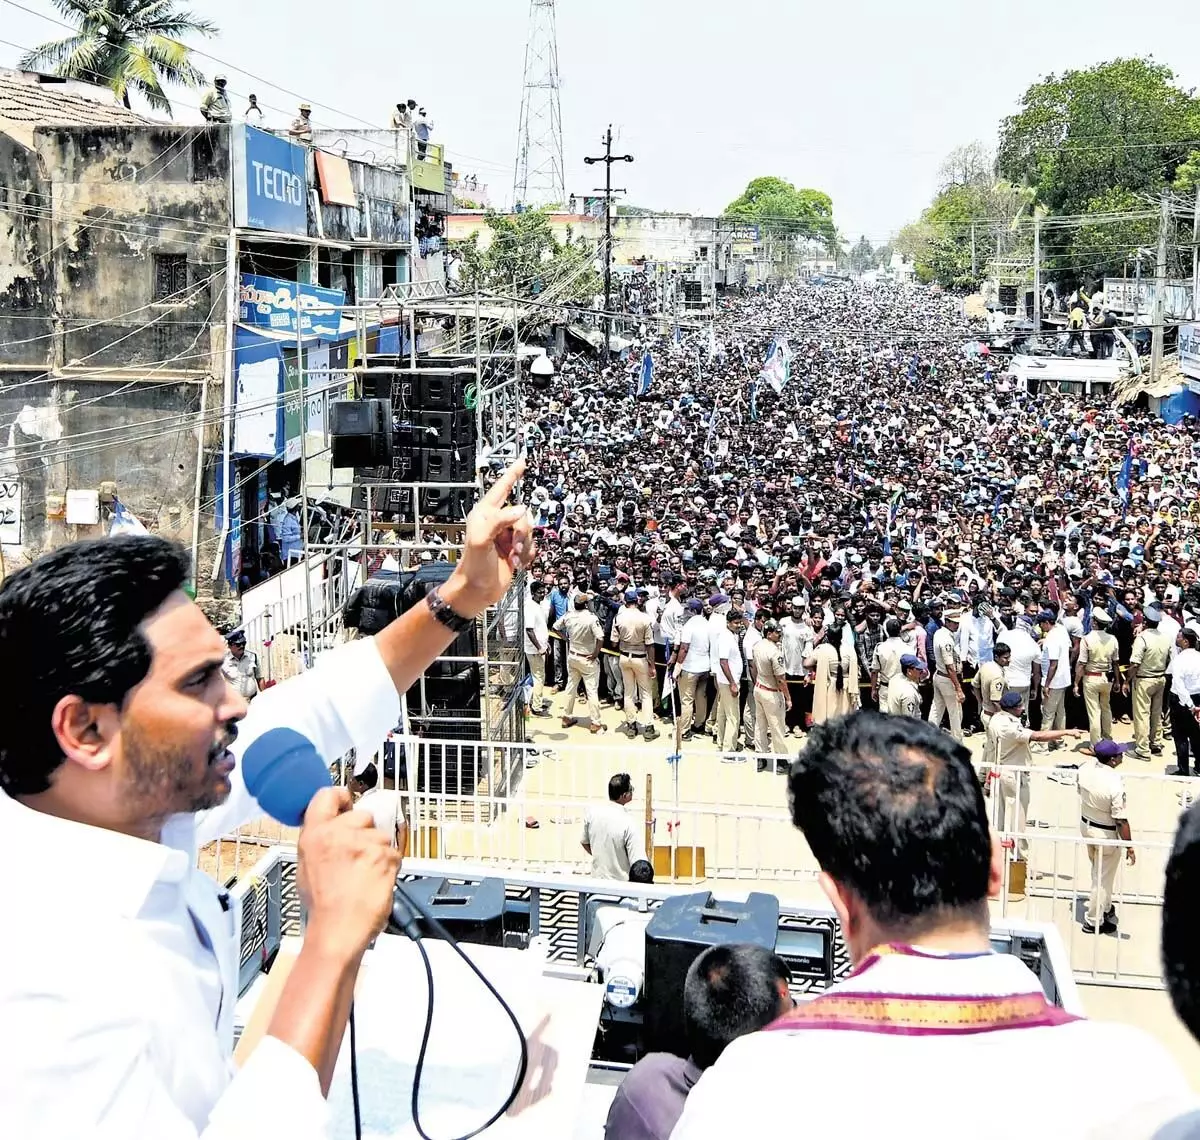 नायडू को वोट देने का मतलब कल्याणकारी योजनाओं को अलविदा कहना: आंध्र प्रदेश के मुख्यमंत्री